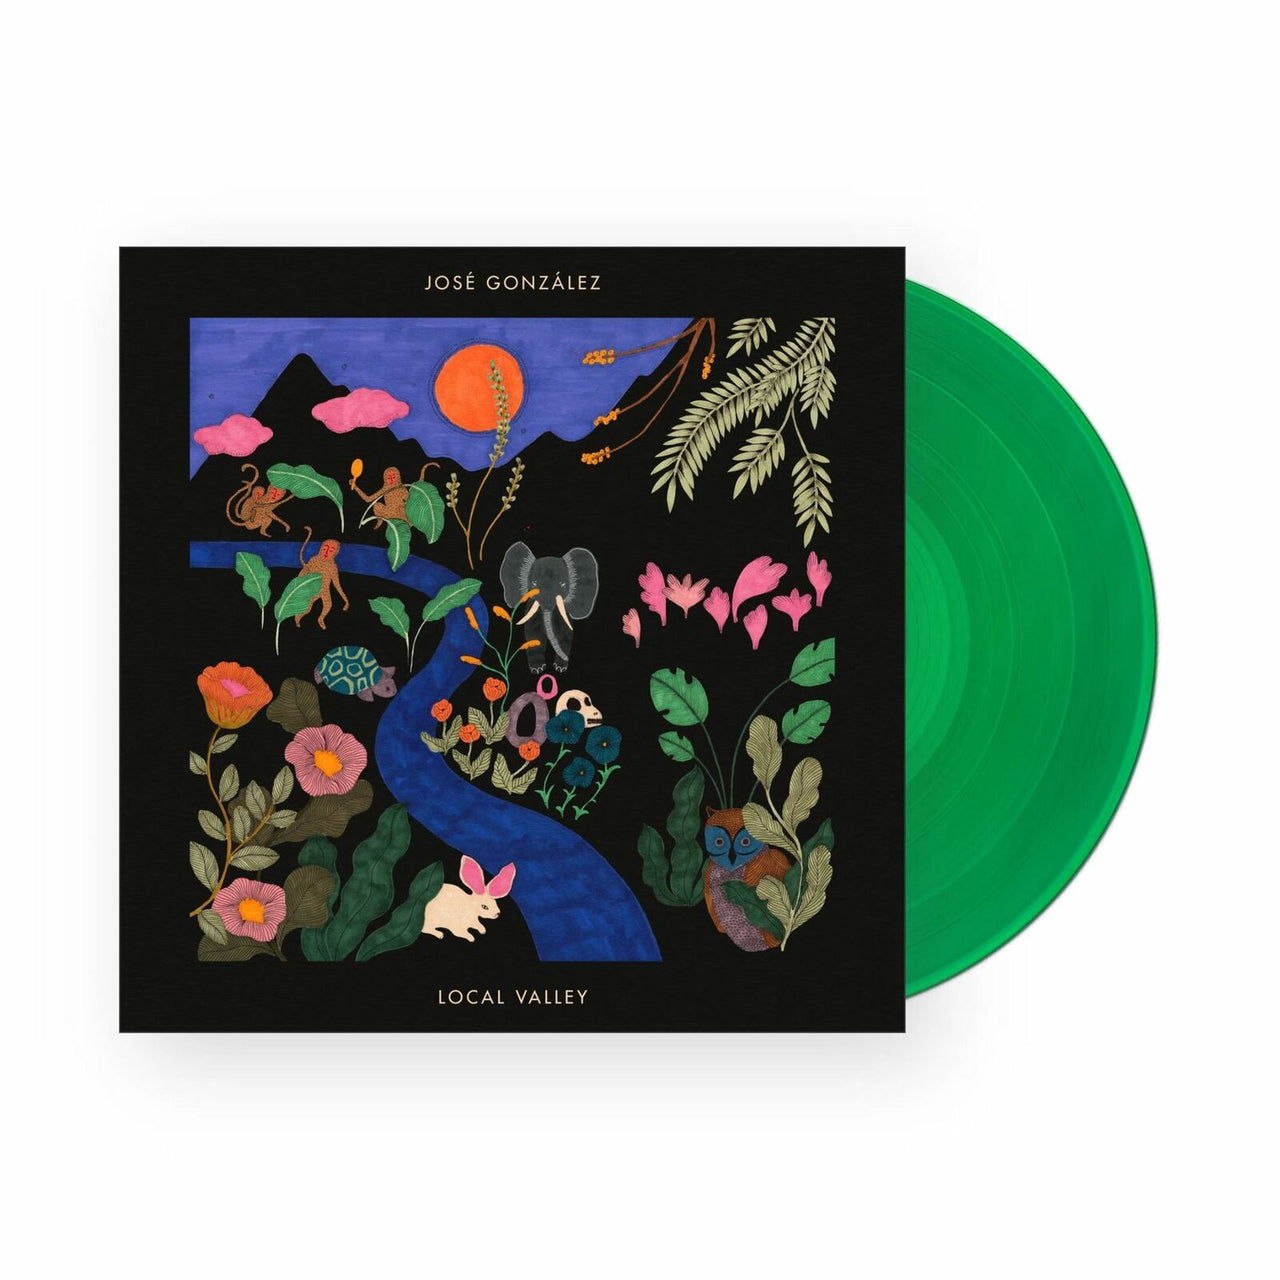 Jose Gonzalez: Local Valley Vinyl LP (Indie Exclusive, Green)